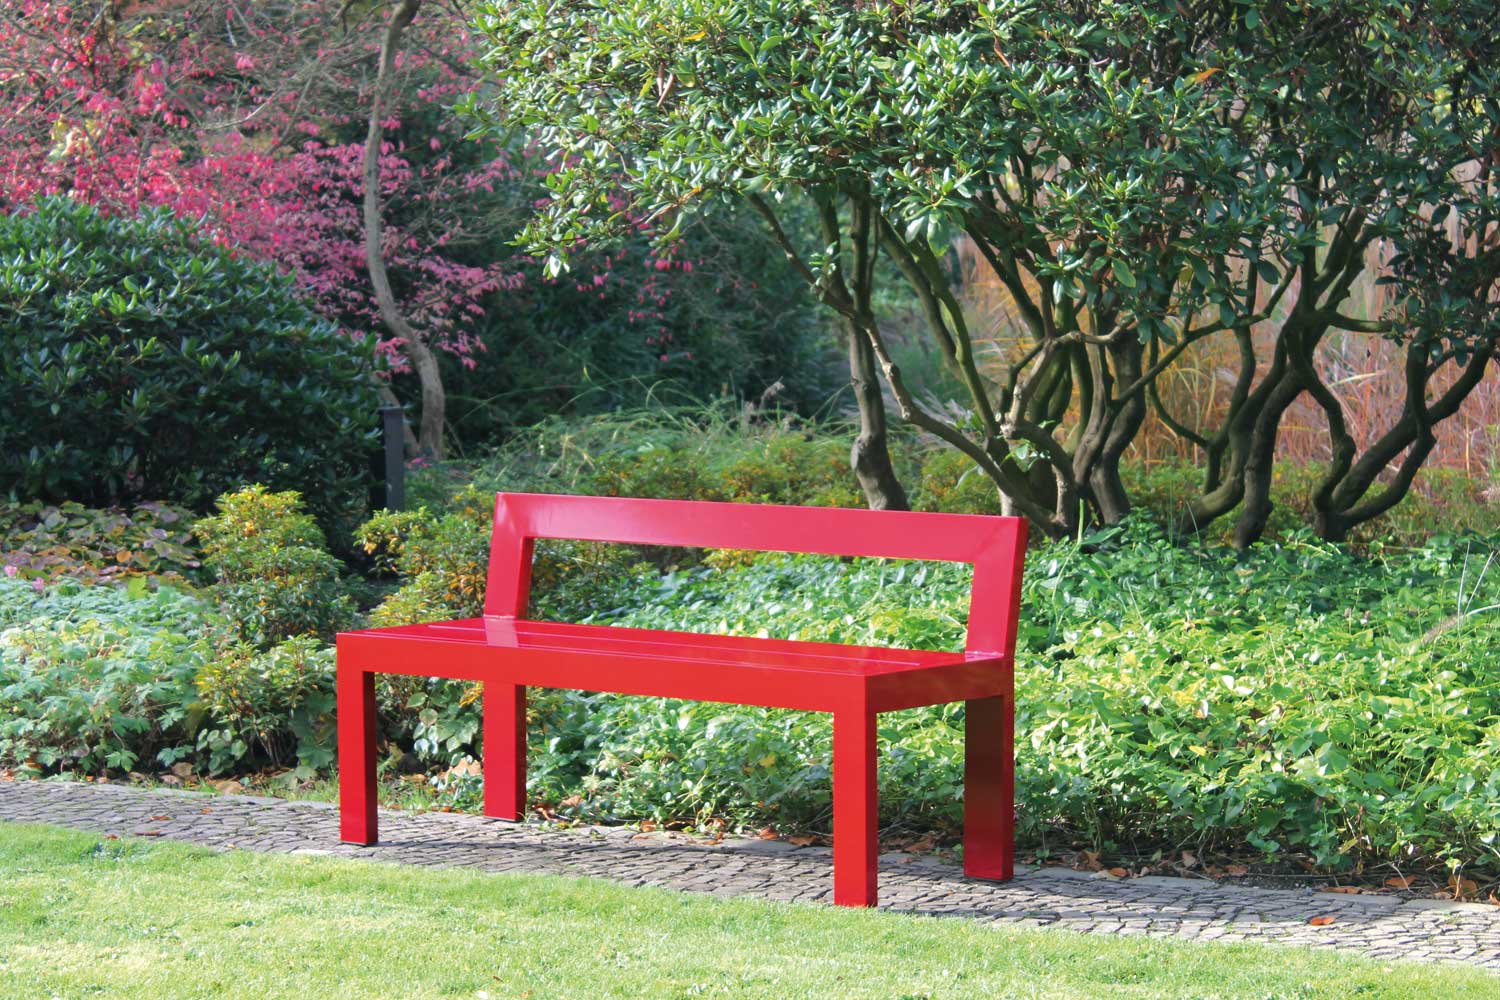 Rote Gartenbank - Farbenfrohe, leichte Solitärbank für den Garten, die immer zum Blickfang wird - Schöner sitzen. Als farbenfroher Akzent im Garten lädt diese Bank ein, neue Blickwinkel im Garten zu entdecken. Als Solitärbank schafft sie einen Ort zum Verweilen, wo man sonst nie sitzen würde, bietet aber auch einer bunten Gesellschaft spontan Sitzplatz, da sie leicht getragen werden kann. Ihre Schlichtheit in der Form erzeugt zudem einen spannenden Kontrast zur Flora im Garten und bringt auch versteckte Ecken im Garten zur Geltung.